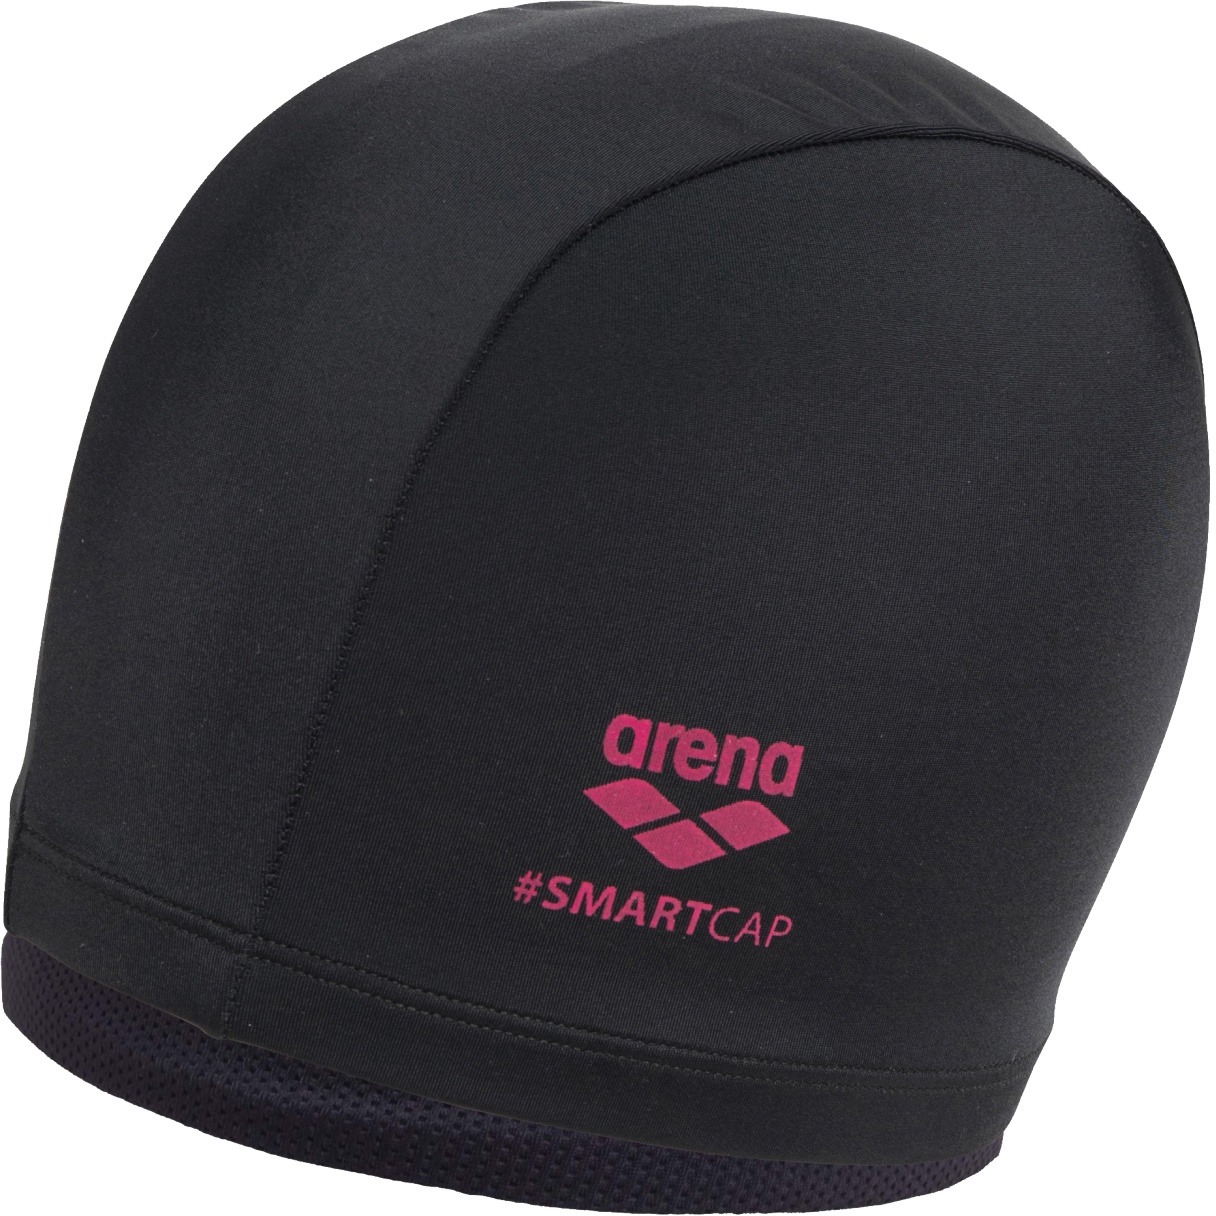 Picture of arena Smartcap Swim Cap - Black